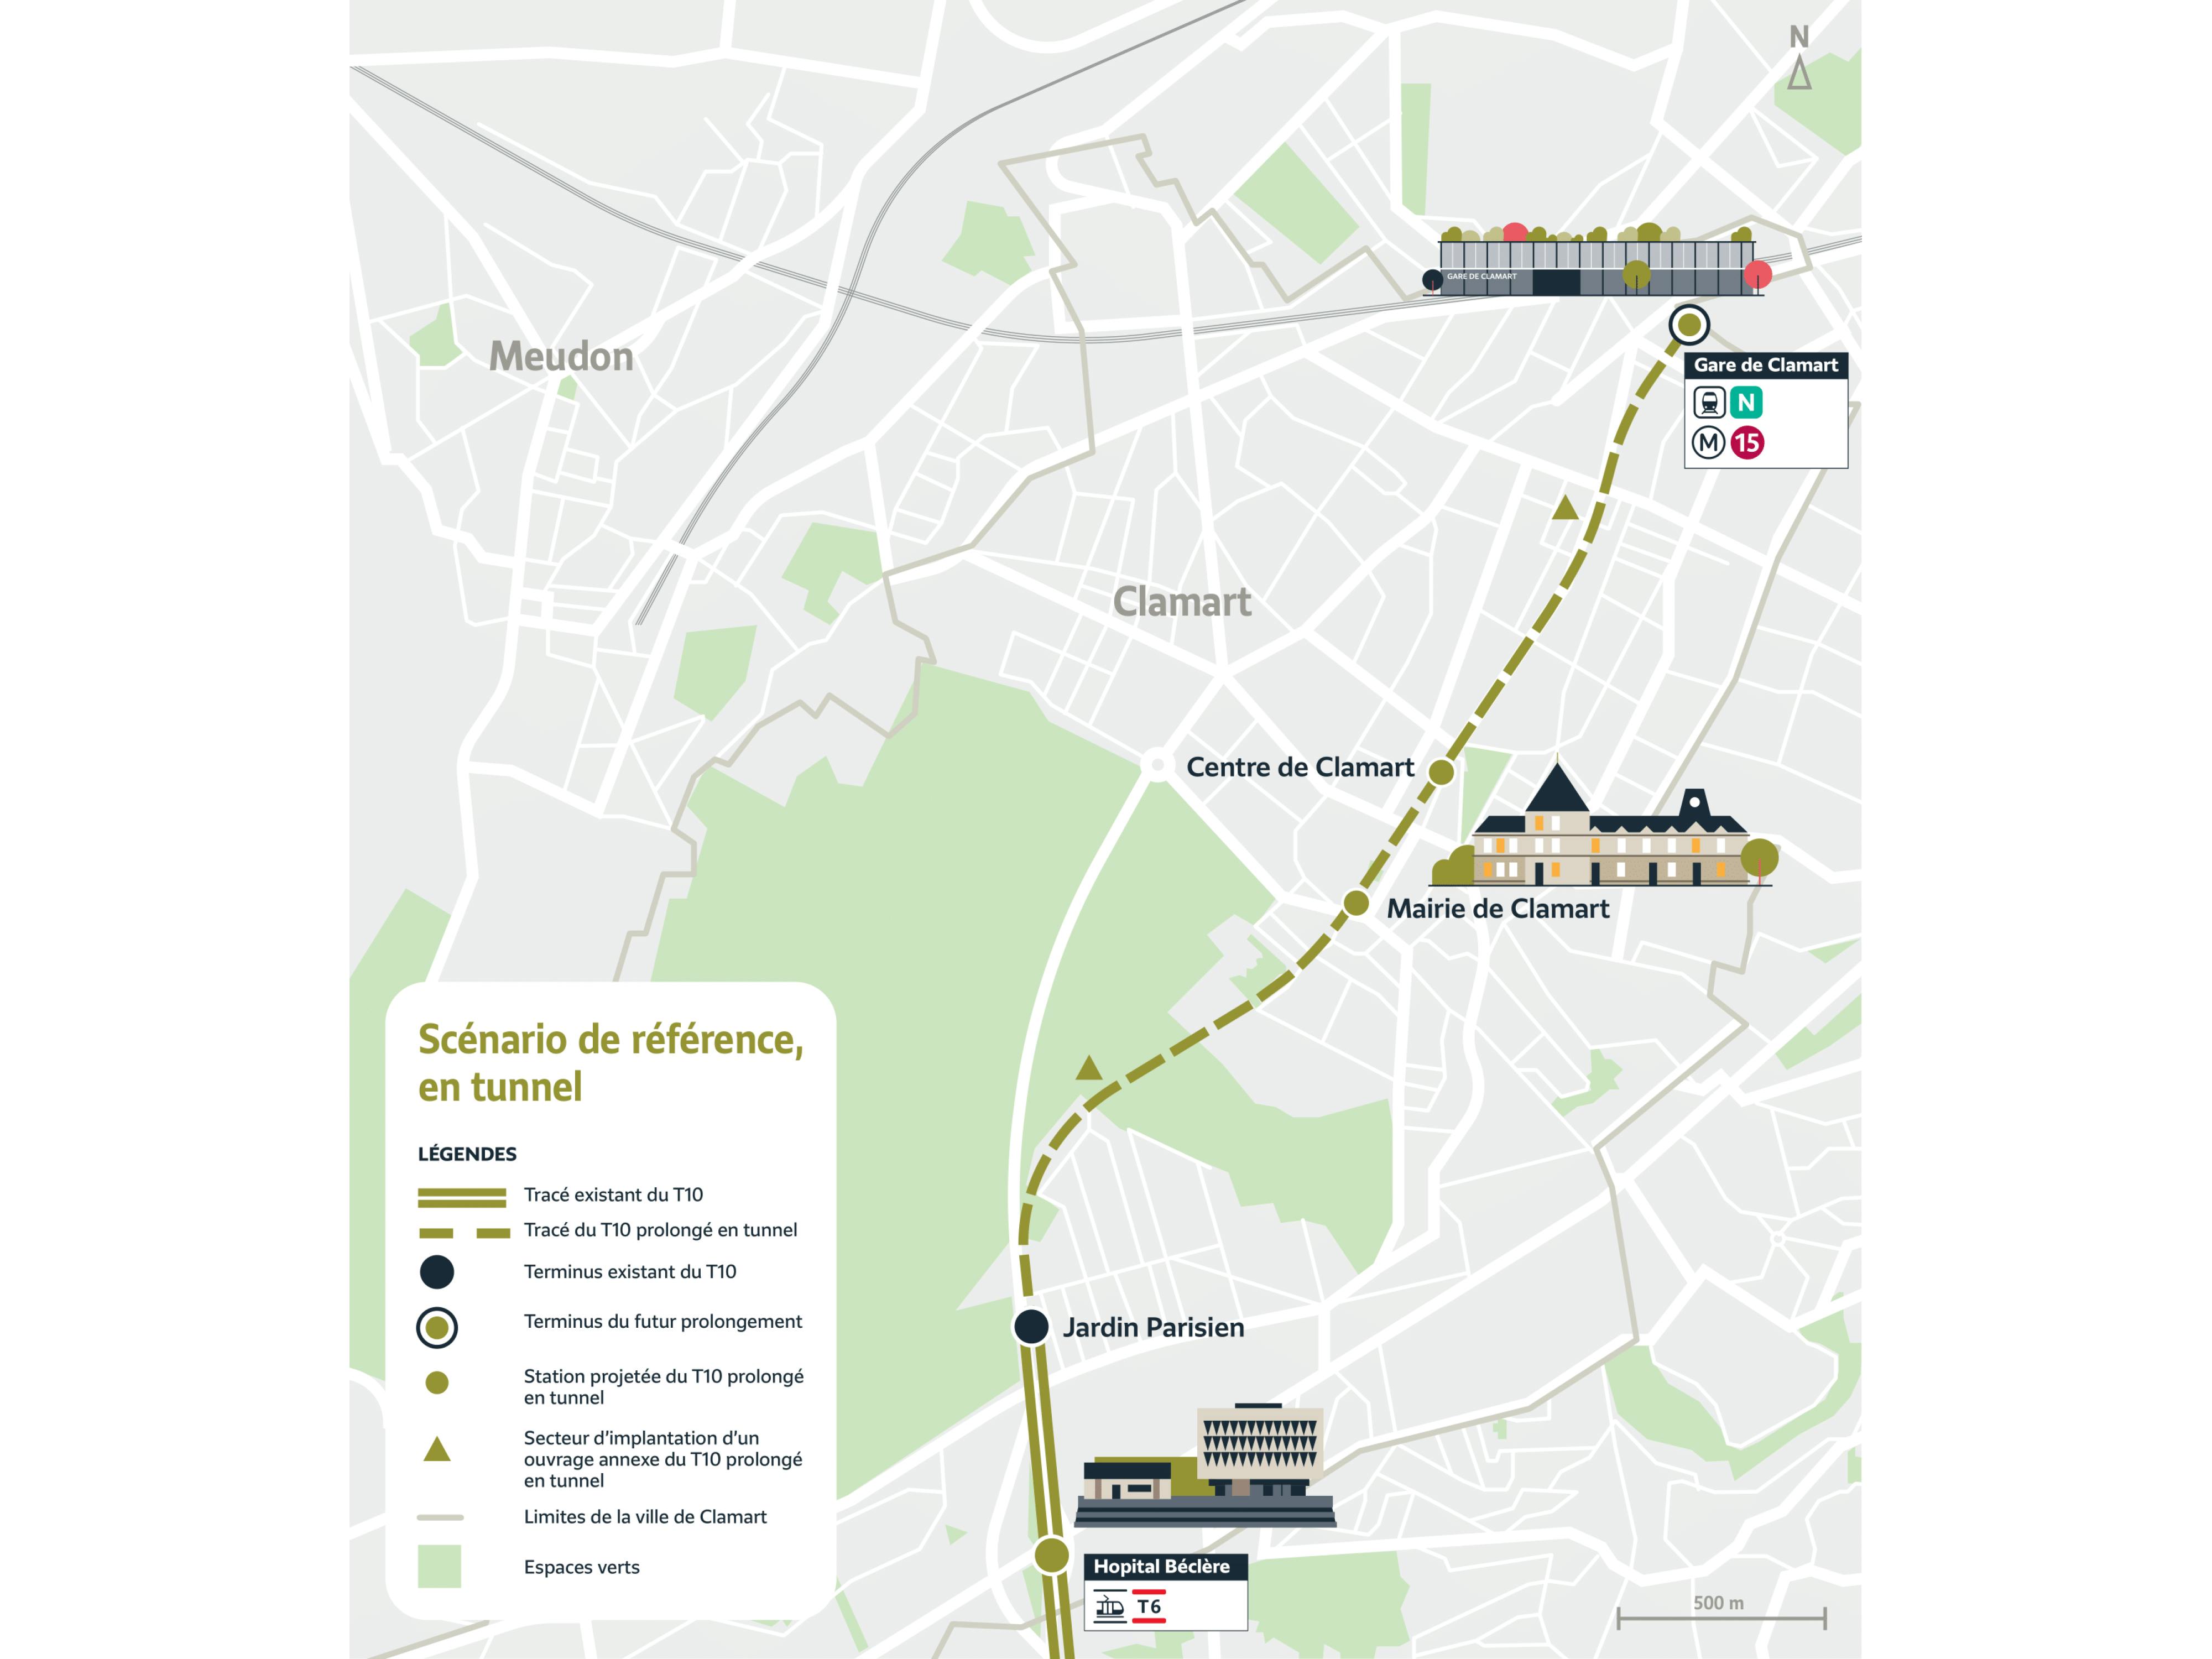 Plan du projet de prolongement du tram T10 à Clamart selon le scénario en tunnel retenu à l’issue de la concertation préalable. Le tracé part de Jardin Parisien et dessert les stations Mairie de Clamart puis Centre de Clamart avant d'arriver à son terminus Gare de Clamart. 